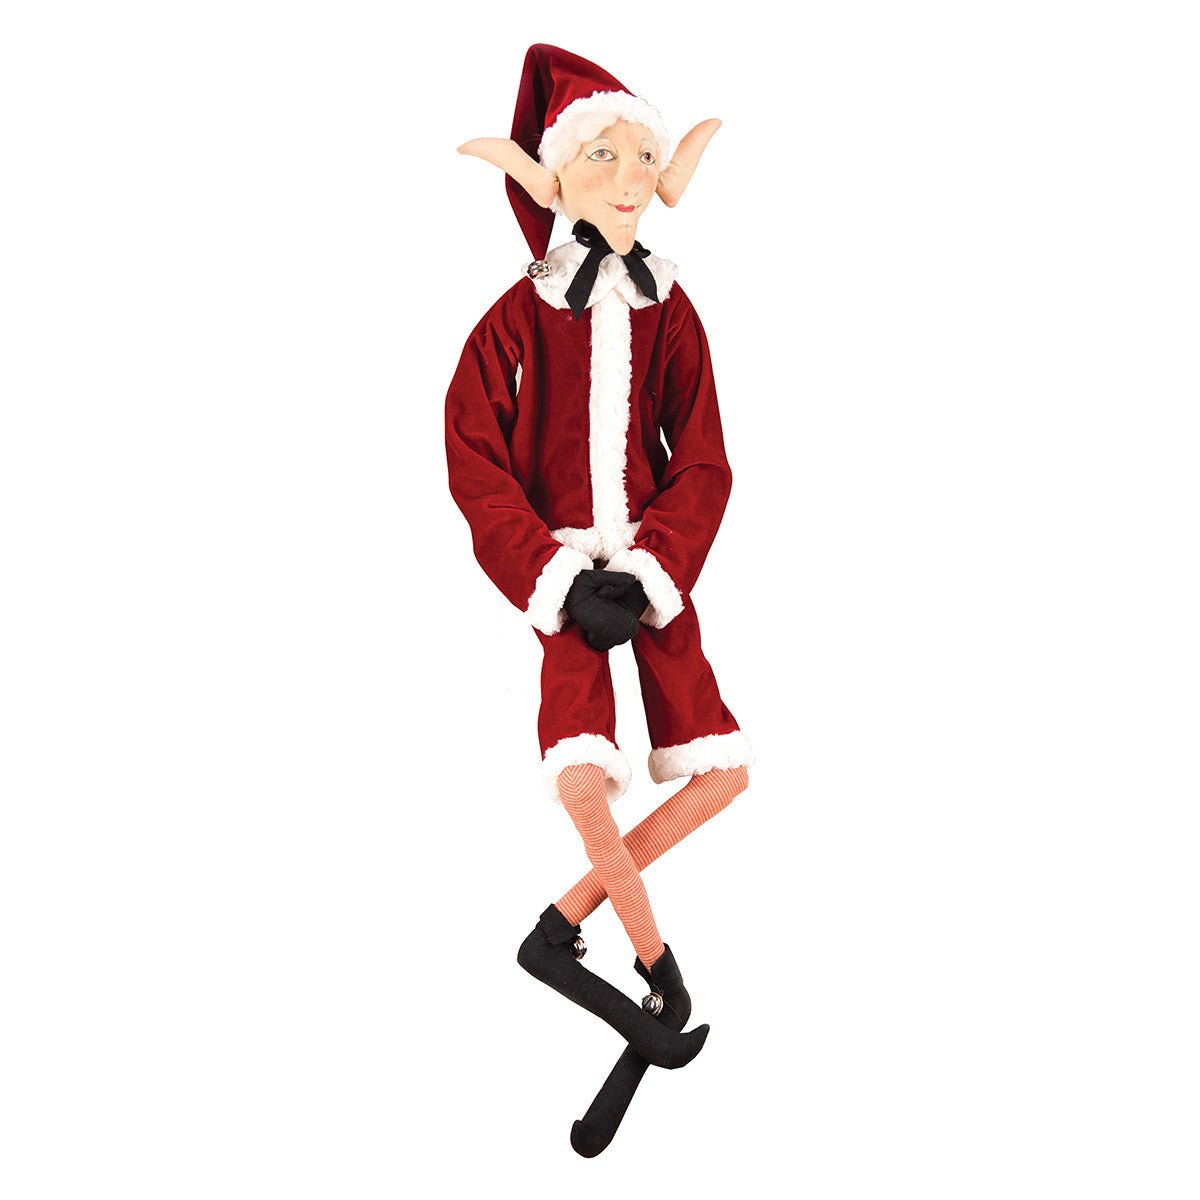 Elwood Santa's Helper Elf by Joe Spencer